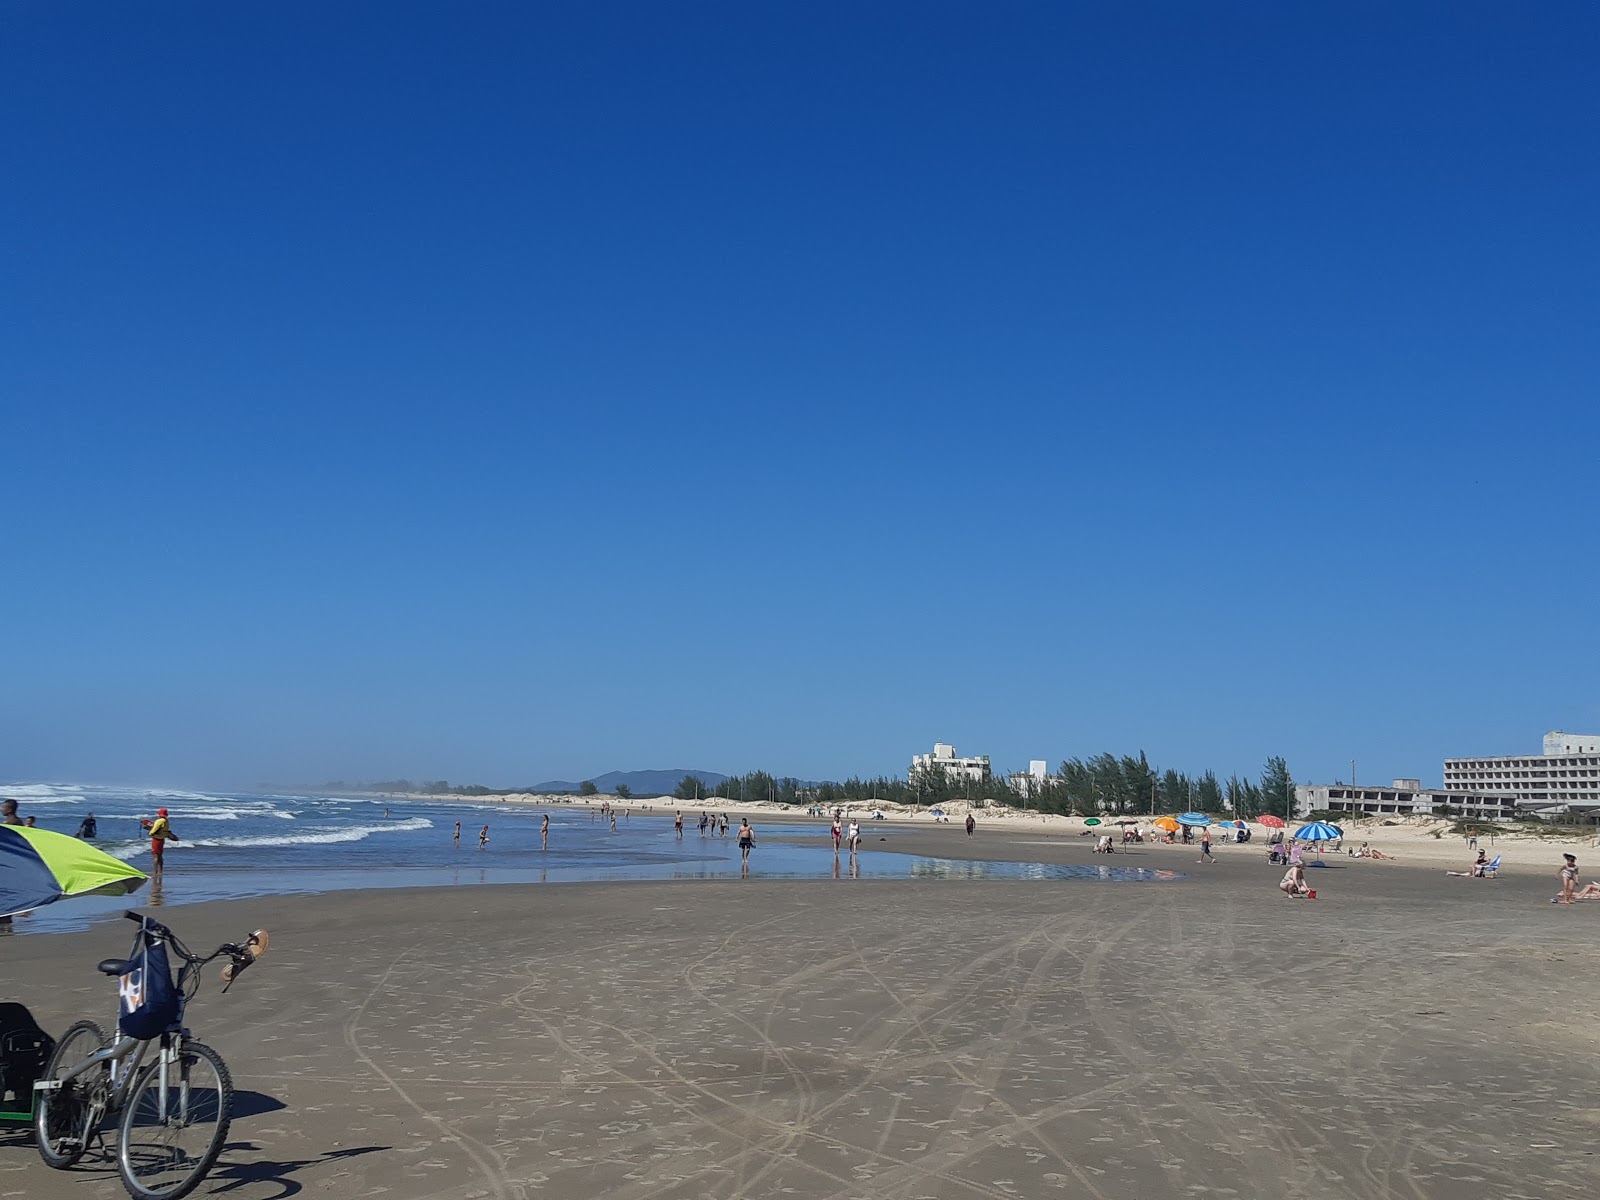 Praia de Itapiruba'in fotoğrafı imkanlar alanı